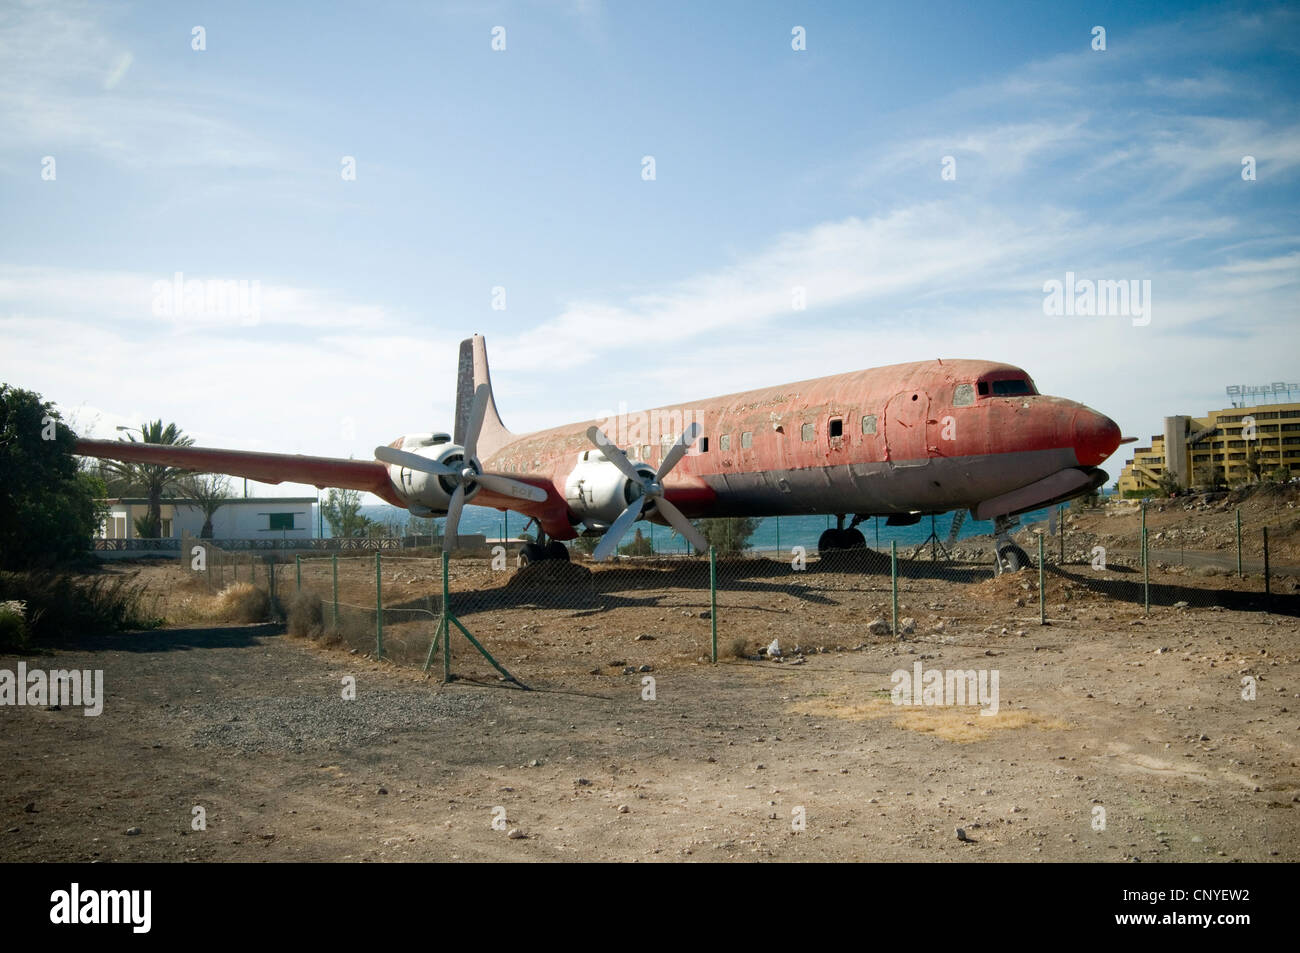 Vieux avions avion avions avion Douglas DC-6 cimetière pourriture pourriture aluminium Coquille triste histoire industrielle à l'historique Banque D'Images